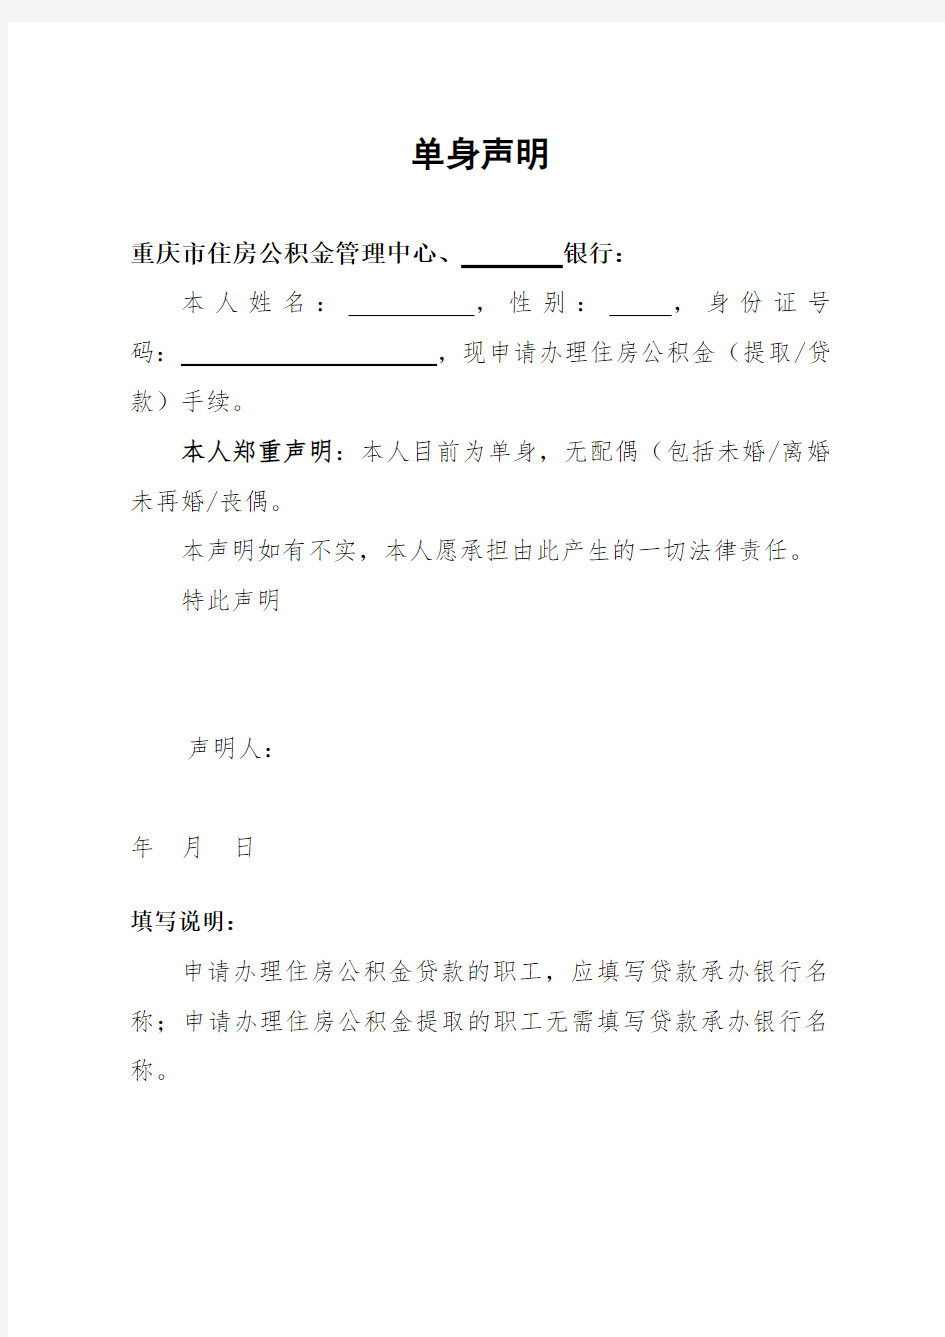 重庆市住房公积金约定提取业务申请表及单身申明